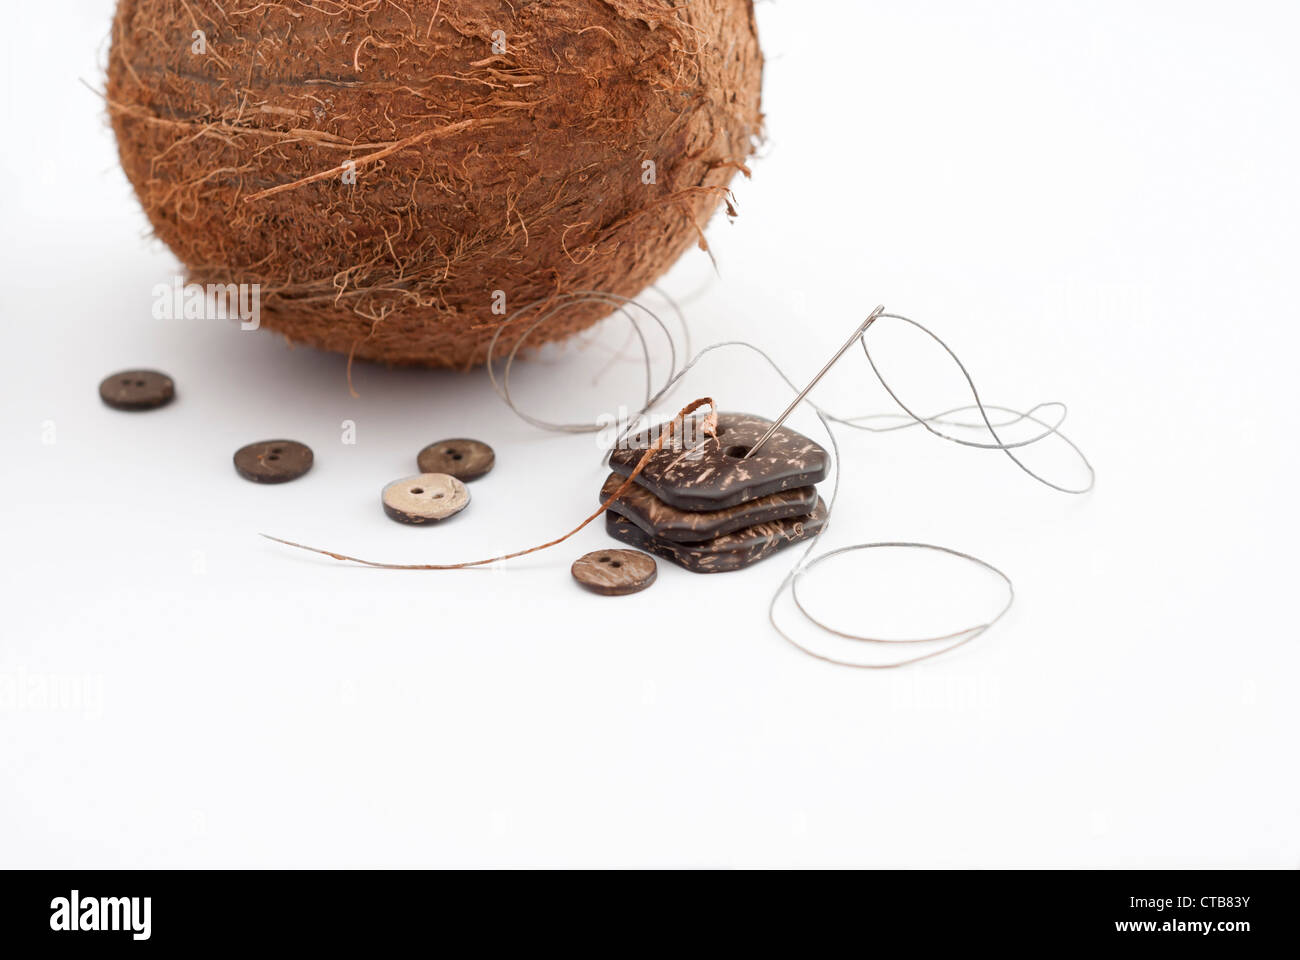 Une noix de coco à côté des boutons artisanaux d'une variété de formes et tailles taillée d'une coque de noix de coco. Banque D'Images